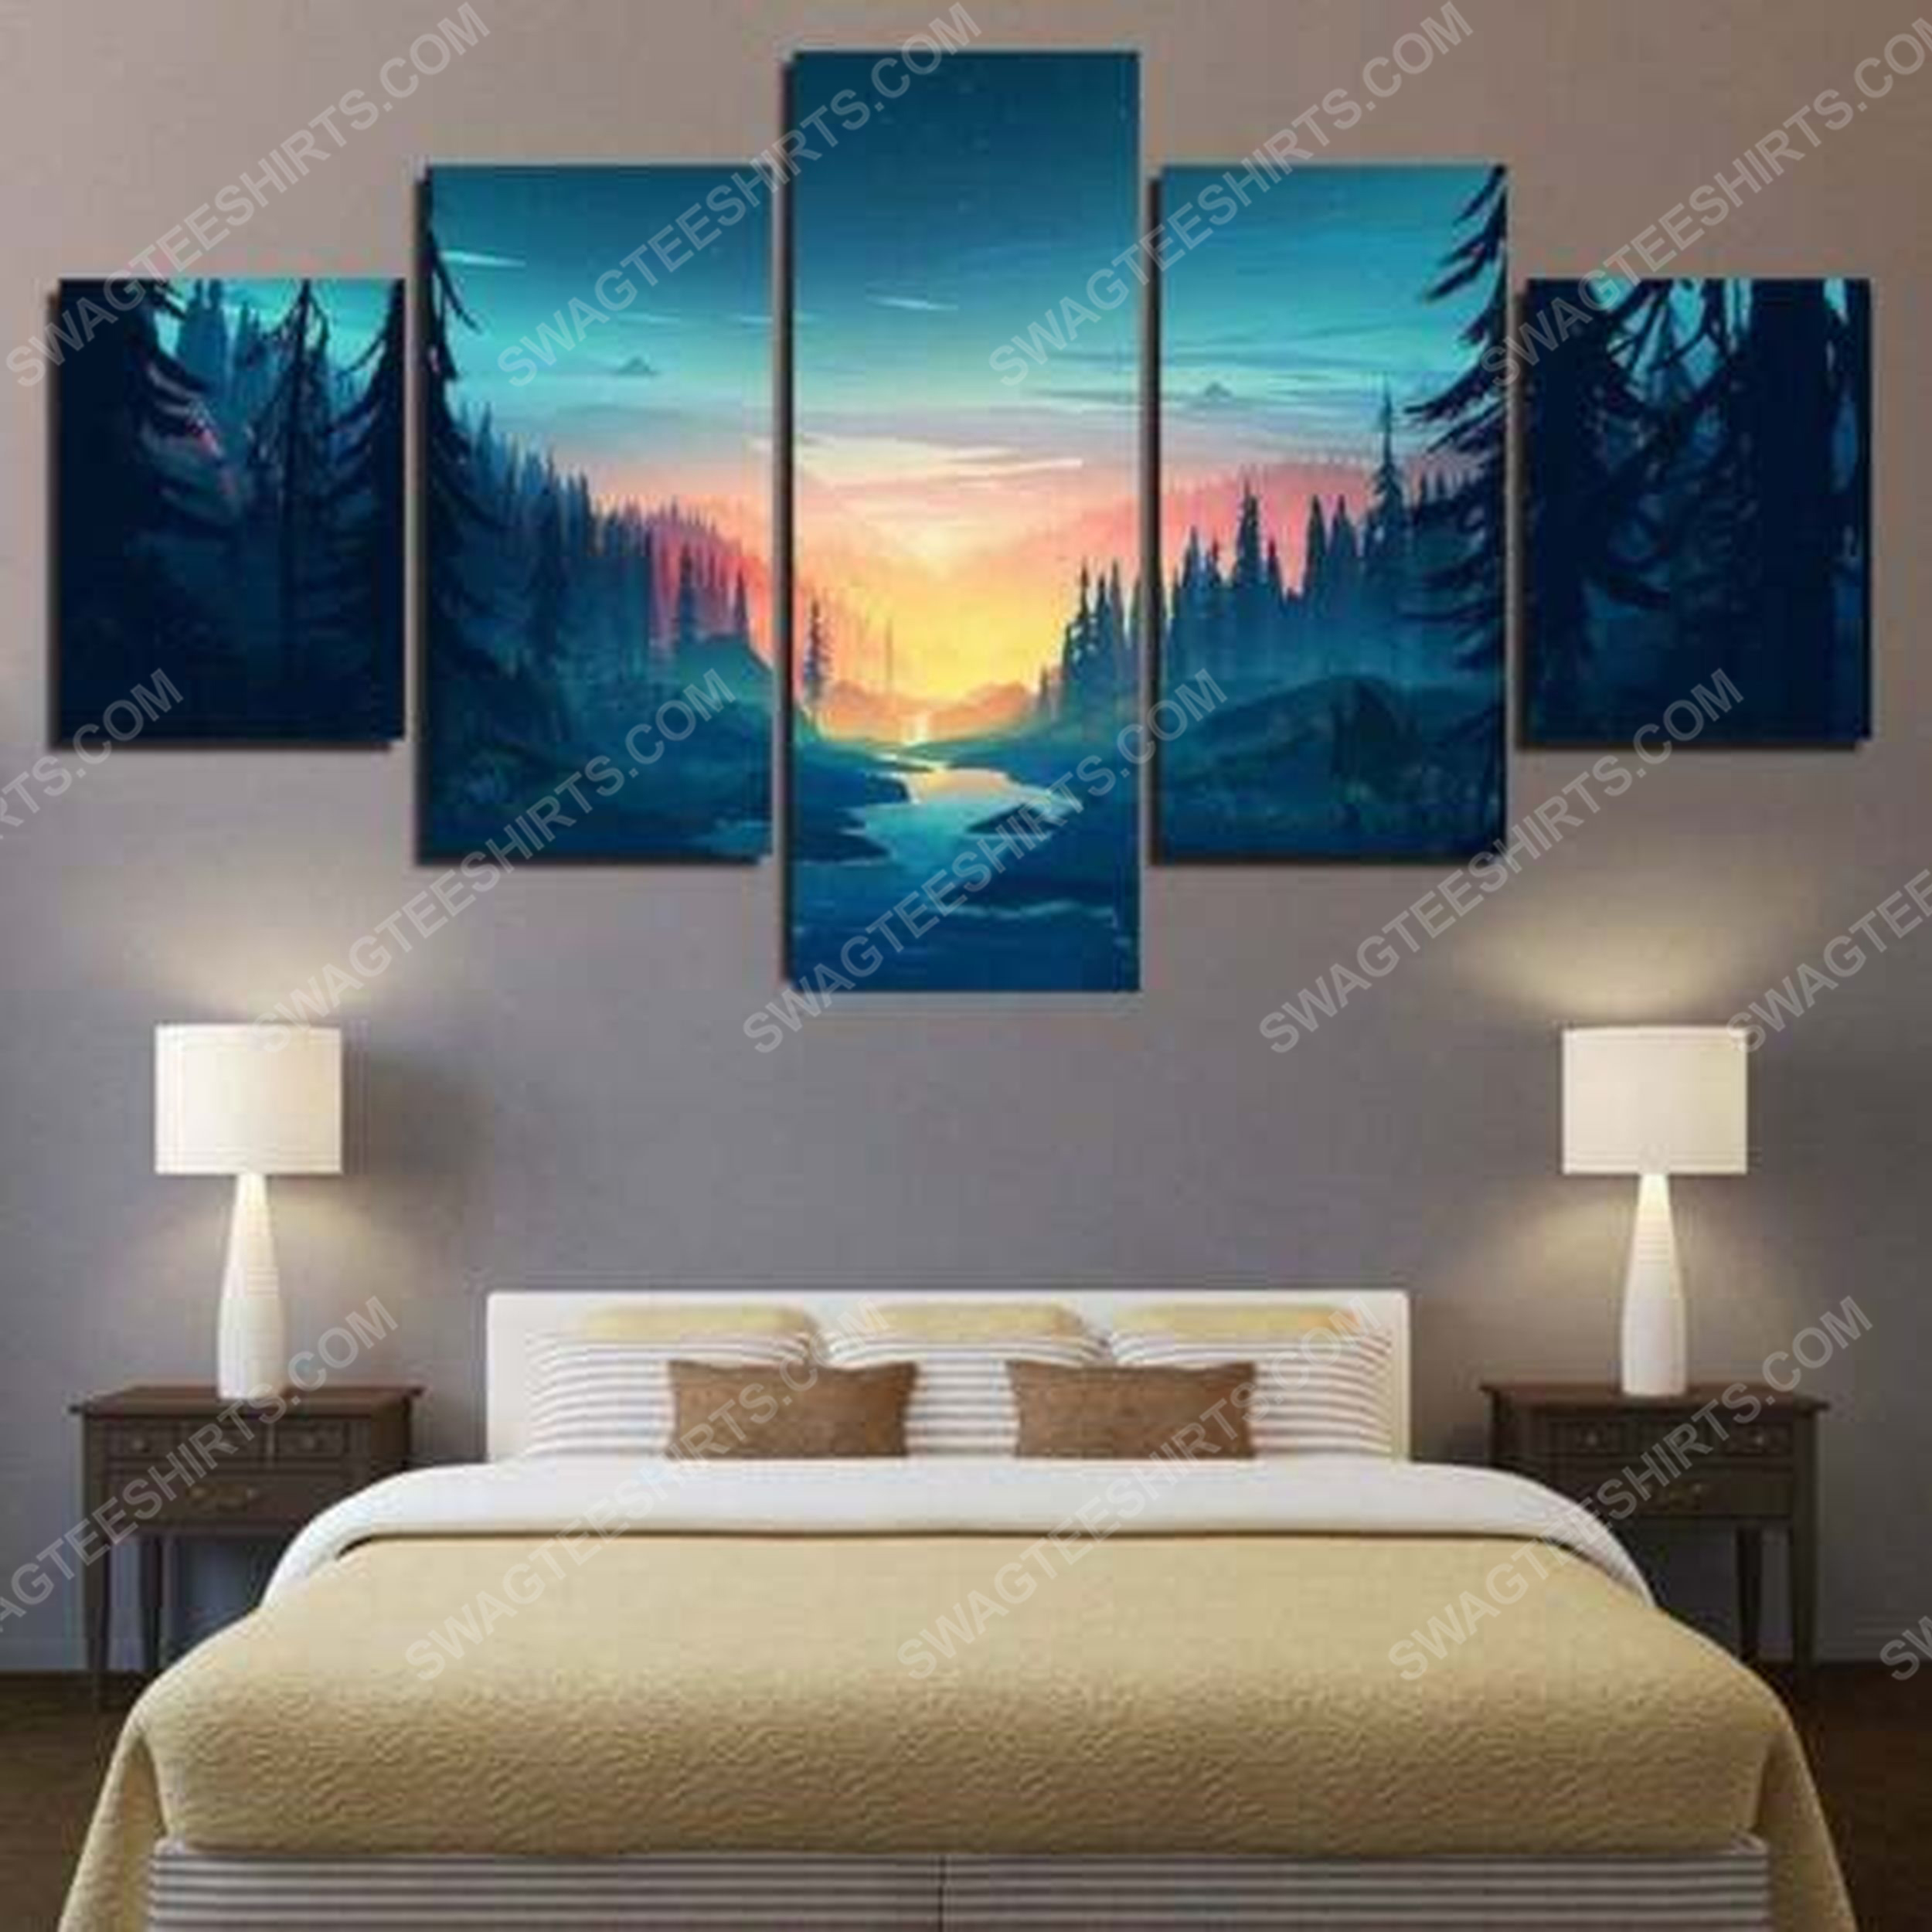 Mountain wilderness sunset bliss canvas wall art home decor